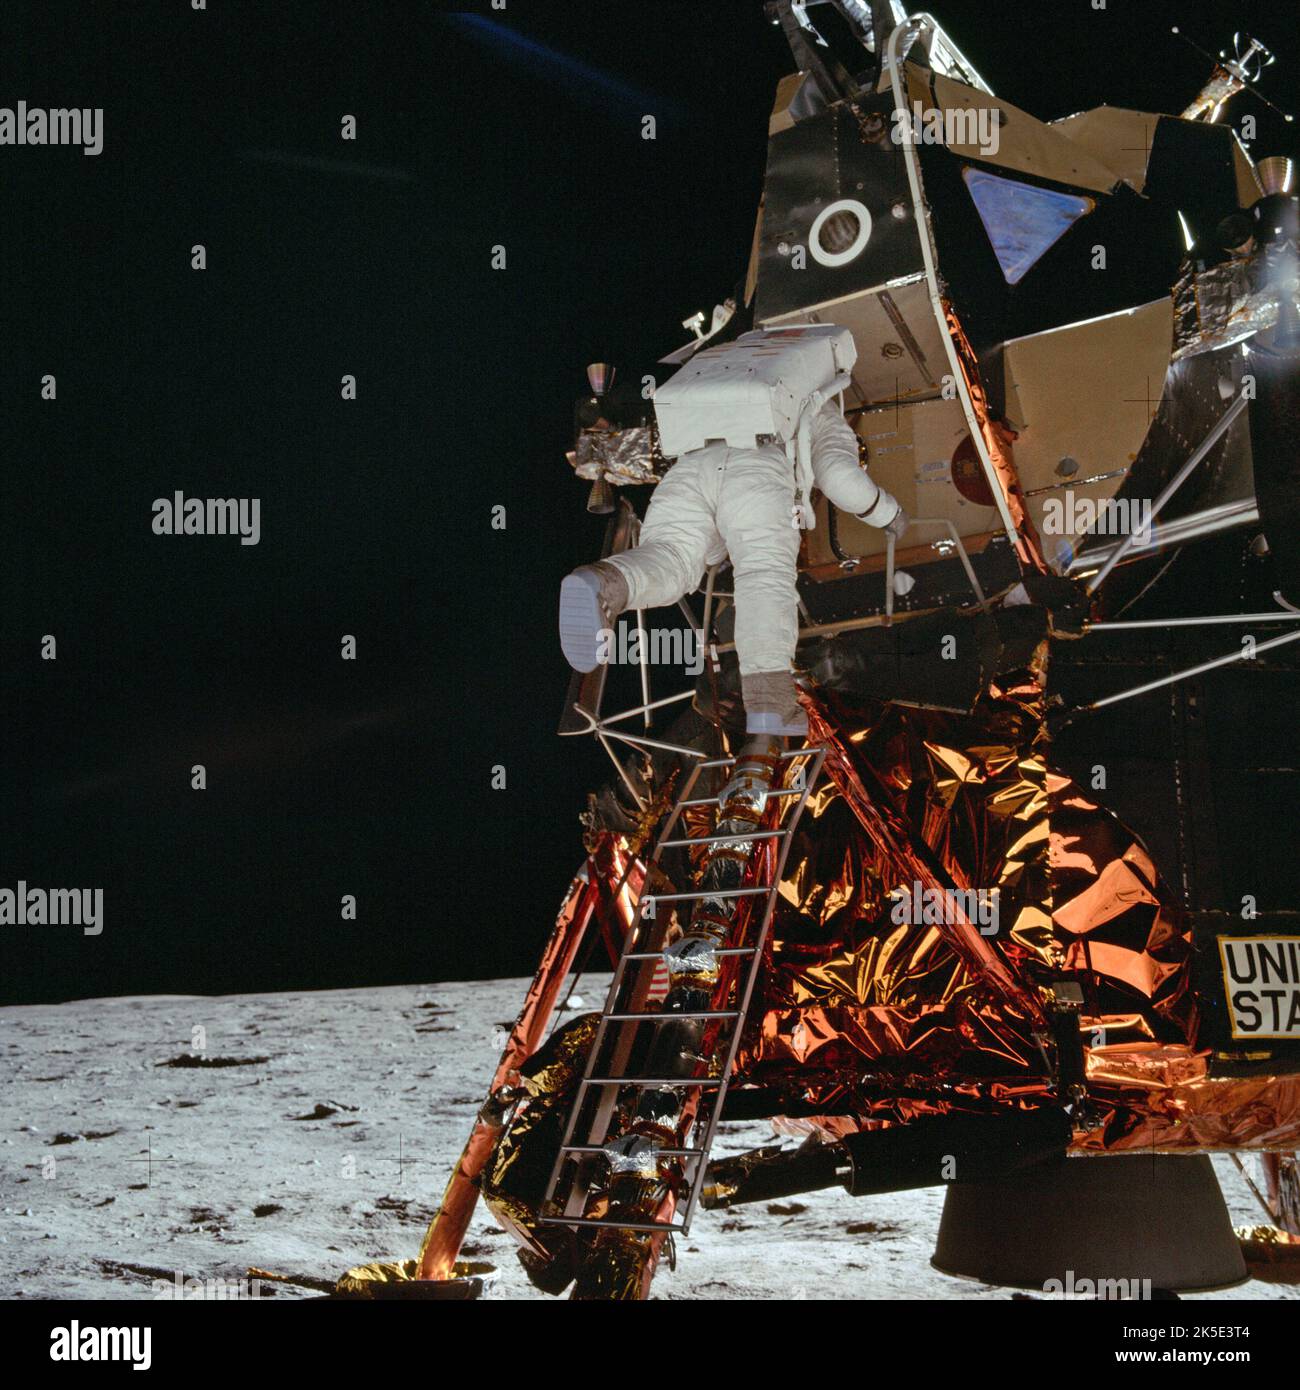 Apollo 11. Erste Mondlandung, 20. Juli 1969. Hier tritt Astronaut Buzz Aldrin von der Leiter der Mondlandefähre auf die Mondoberfläche. Foto von Astronaut Neil Armstrong, der 18 Minuten lang der einzige Mensch war, der den Mond betreten hat. Nachdem dieses Foto aufgenommen wurde, haben die Menschen im Plural dieses Ziel erreicht. Aus diesem Grund ist dies vielleicht eines der überzeugendsten Fotos aller Mondlandungen. Ein ptimisiertes NASA-Bild. Quelle: NASA Stockfoto